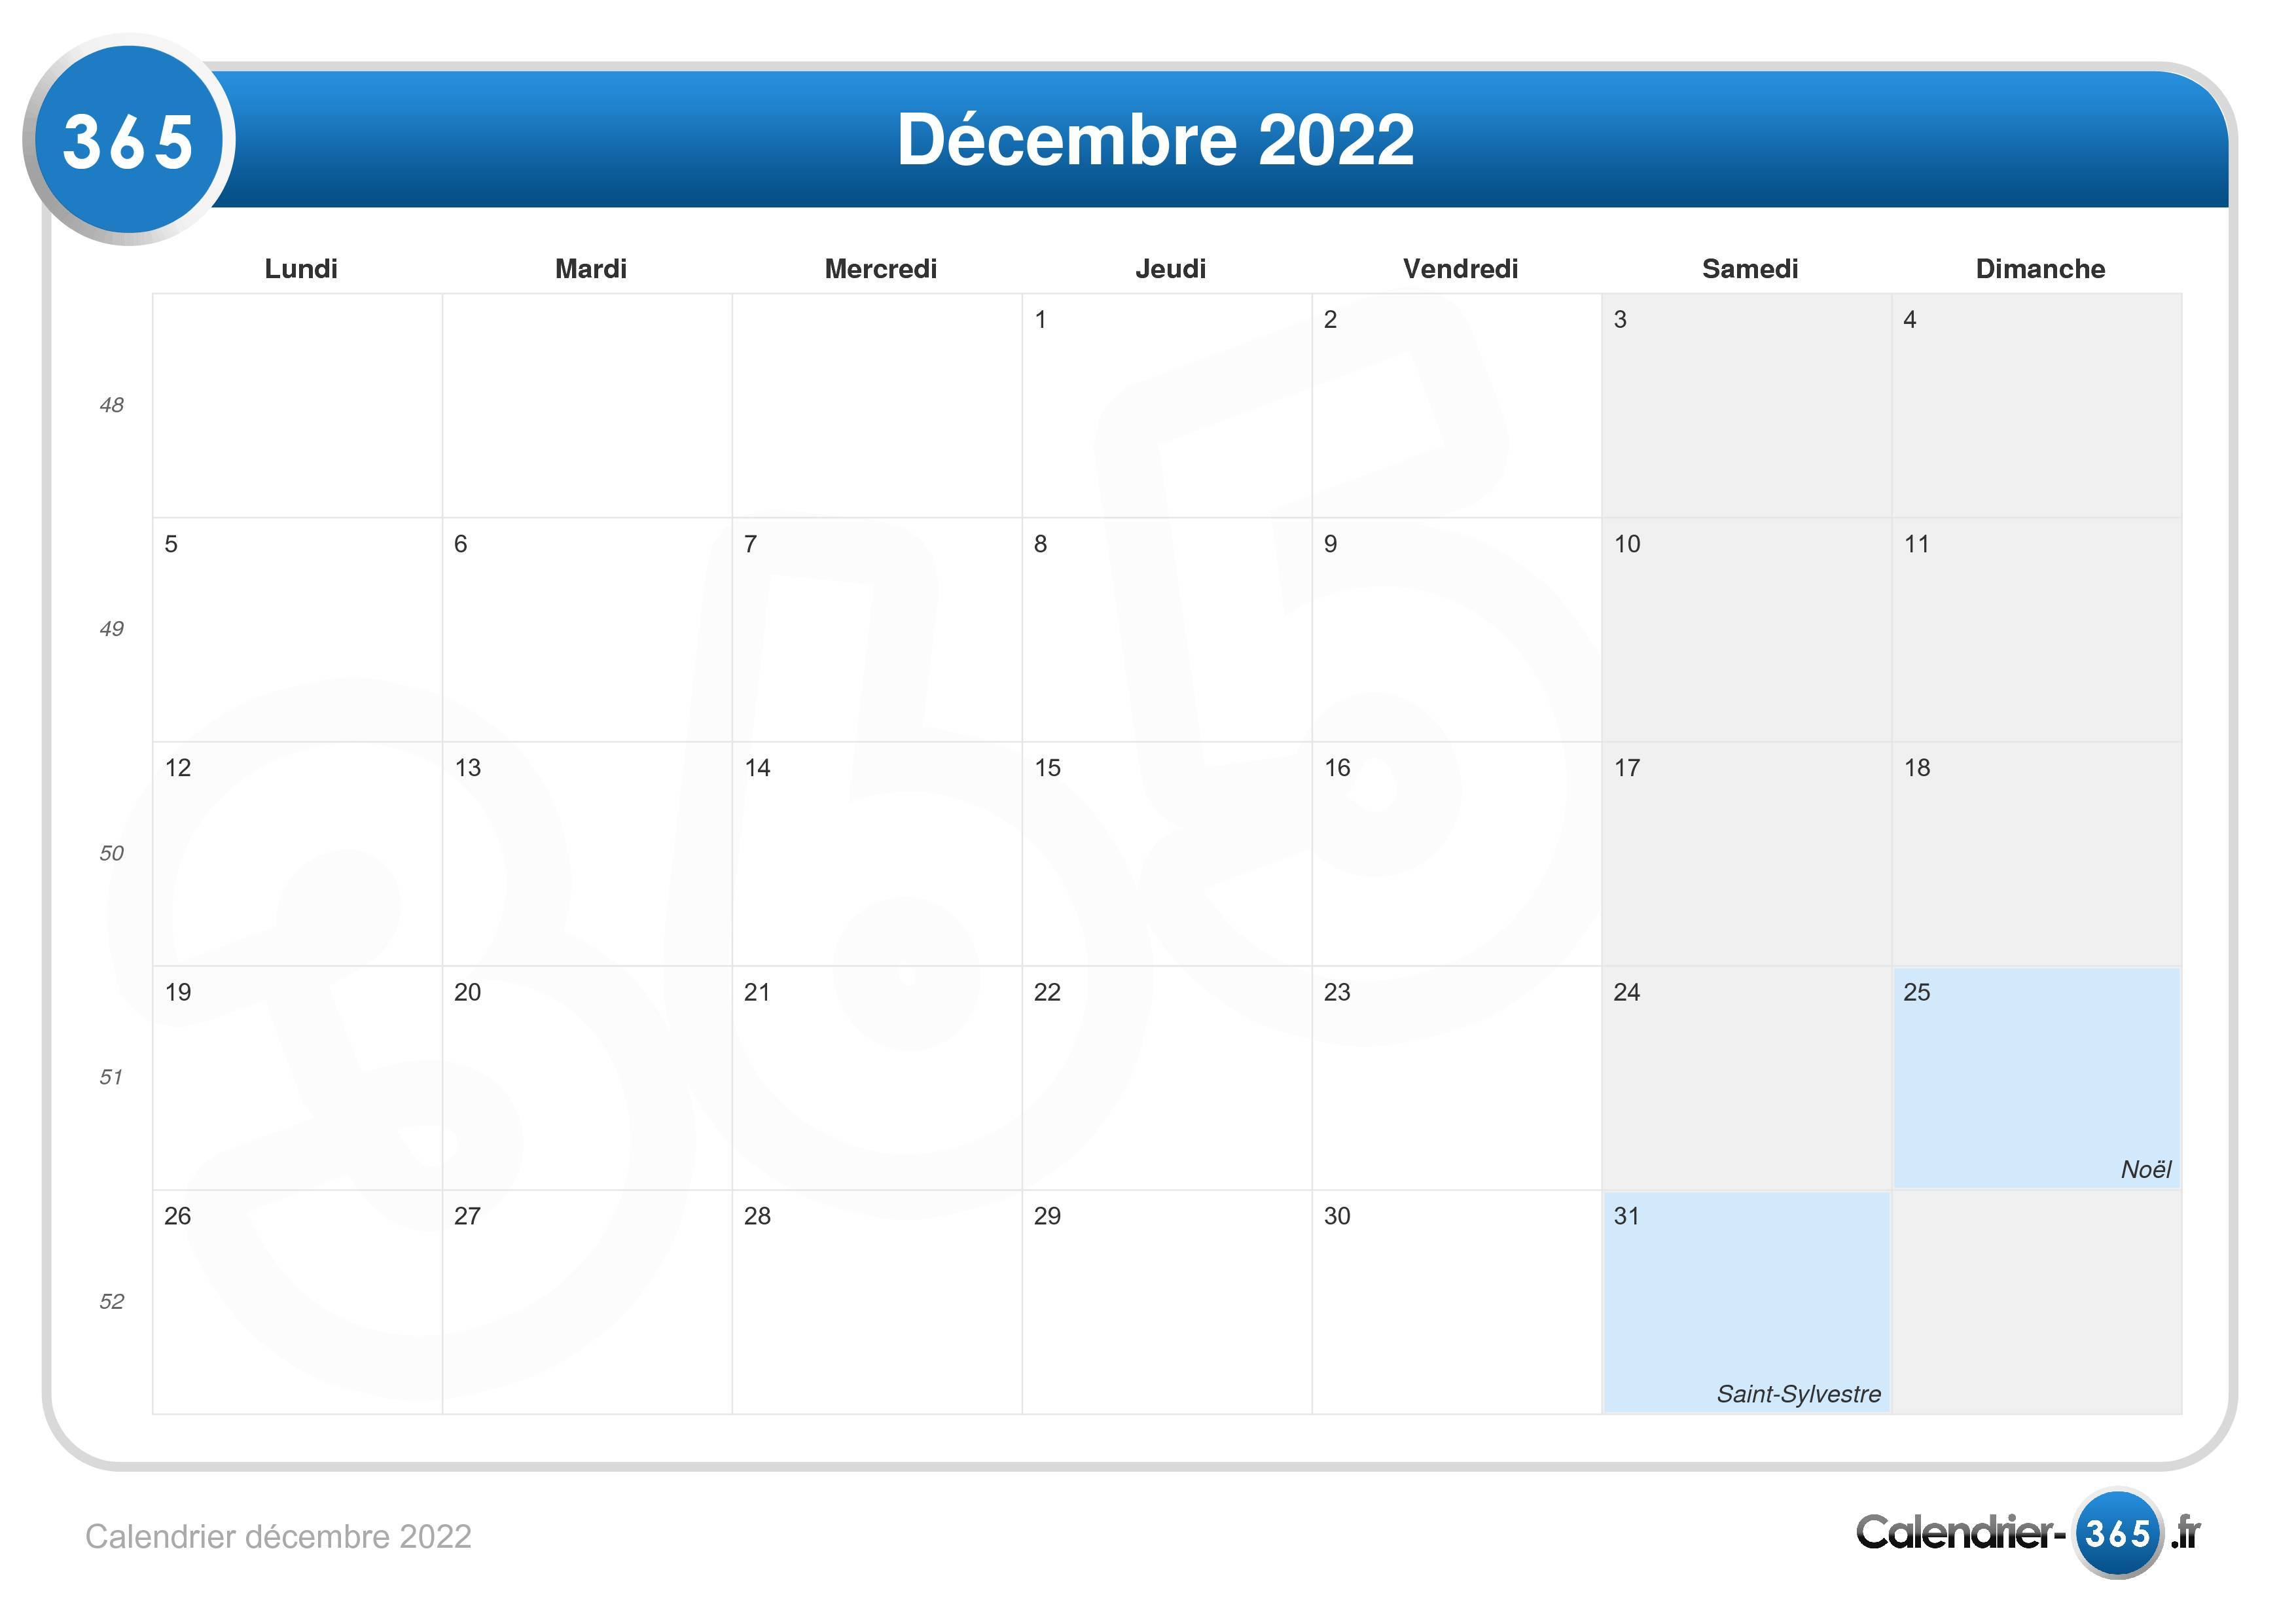 Calendrier 2022 Decembre Calendrier décembre 2022